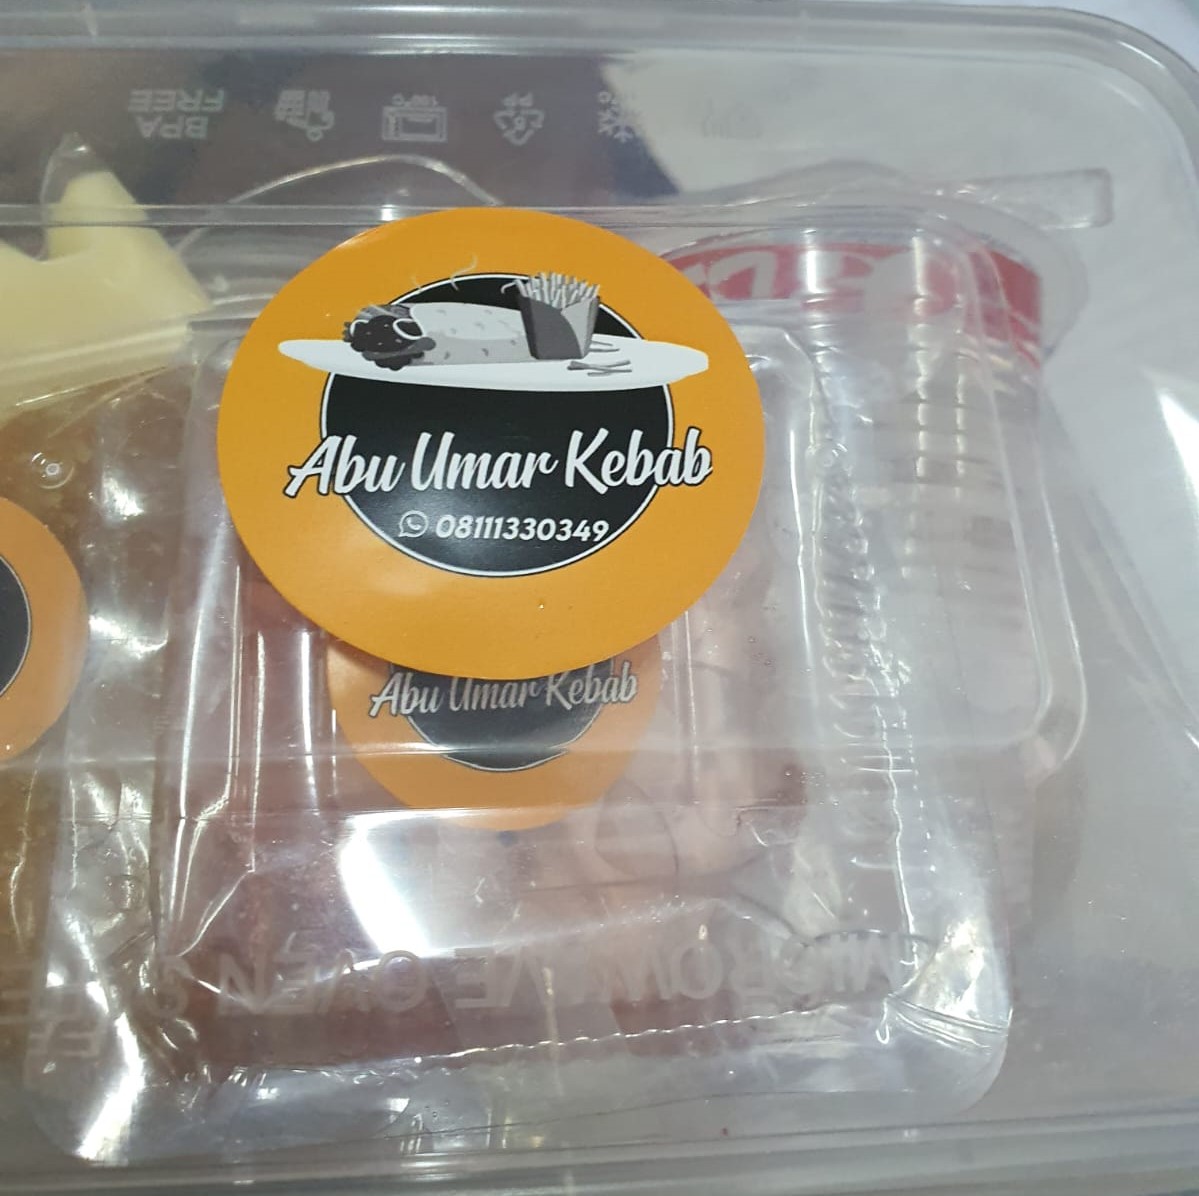 Snack Box Paket A Abu Umar Kebab